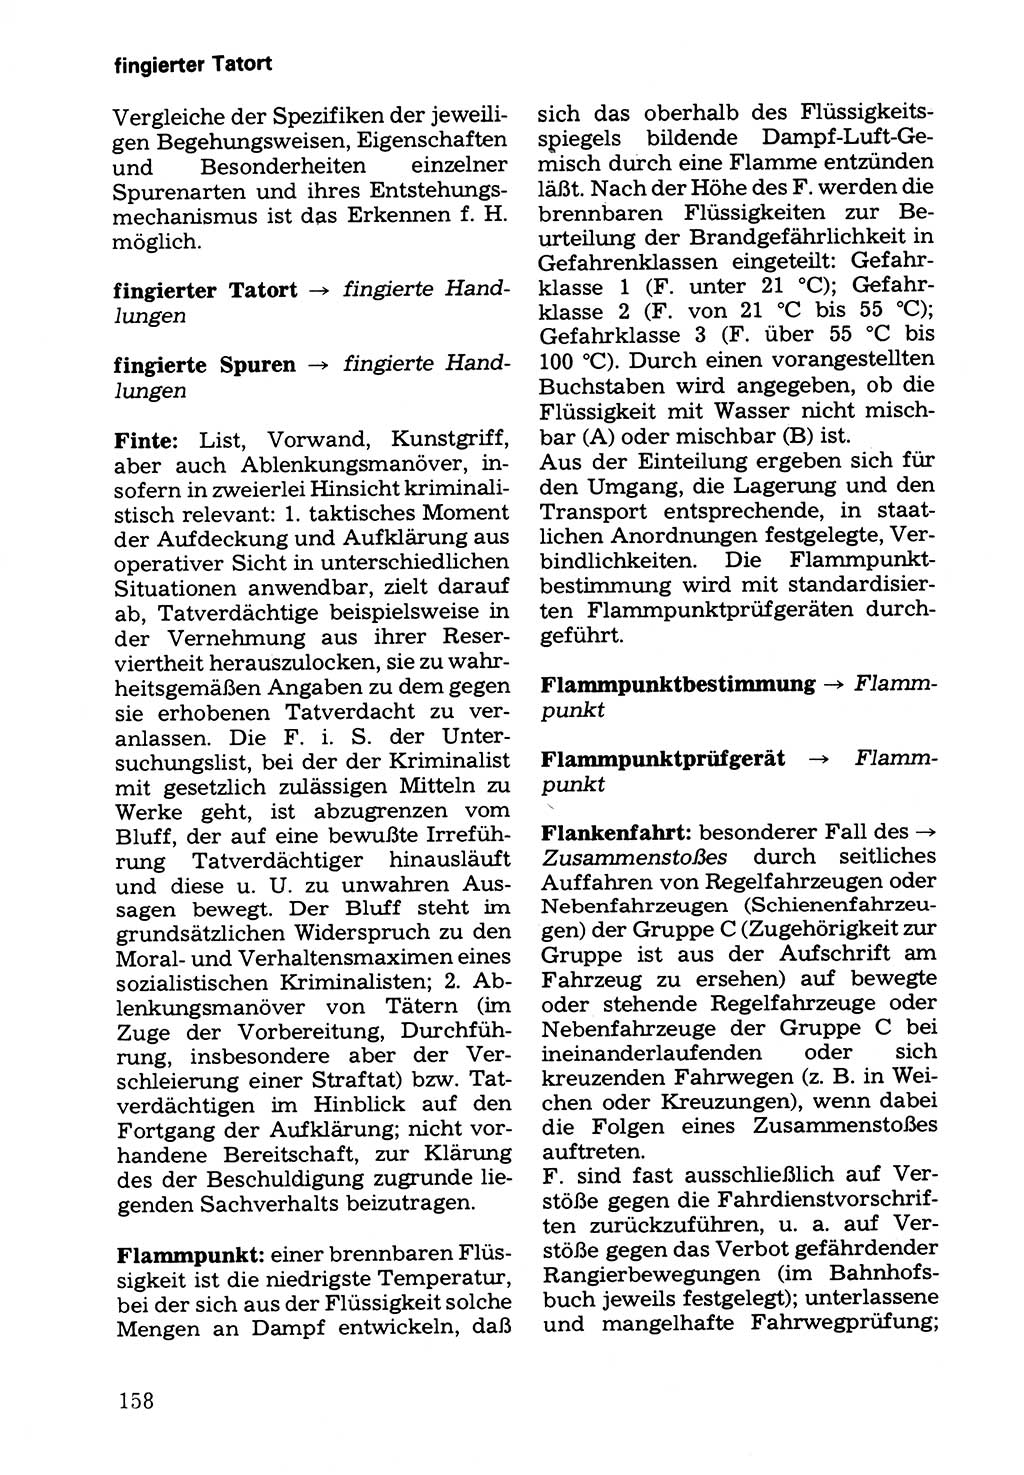 Wörterbuch der sozialistischen Kriminalistik [Deutsche Demokratische Republik (DDR)] 1981, Seite 158 (Wb. soz. Krim. DDR 1981, S. 158)